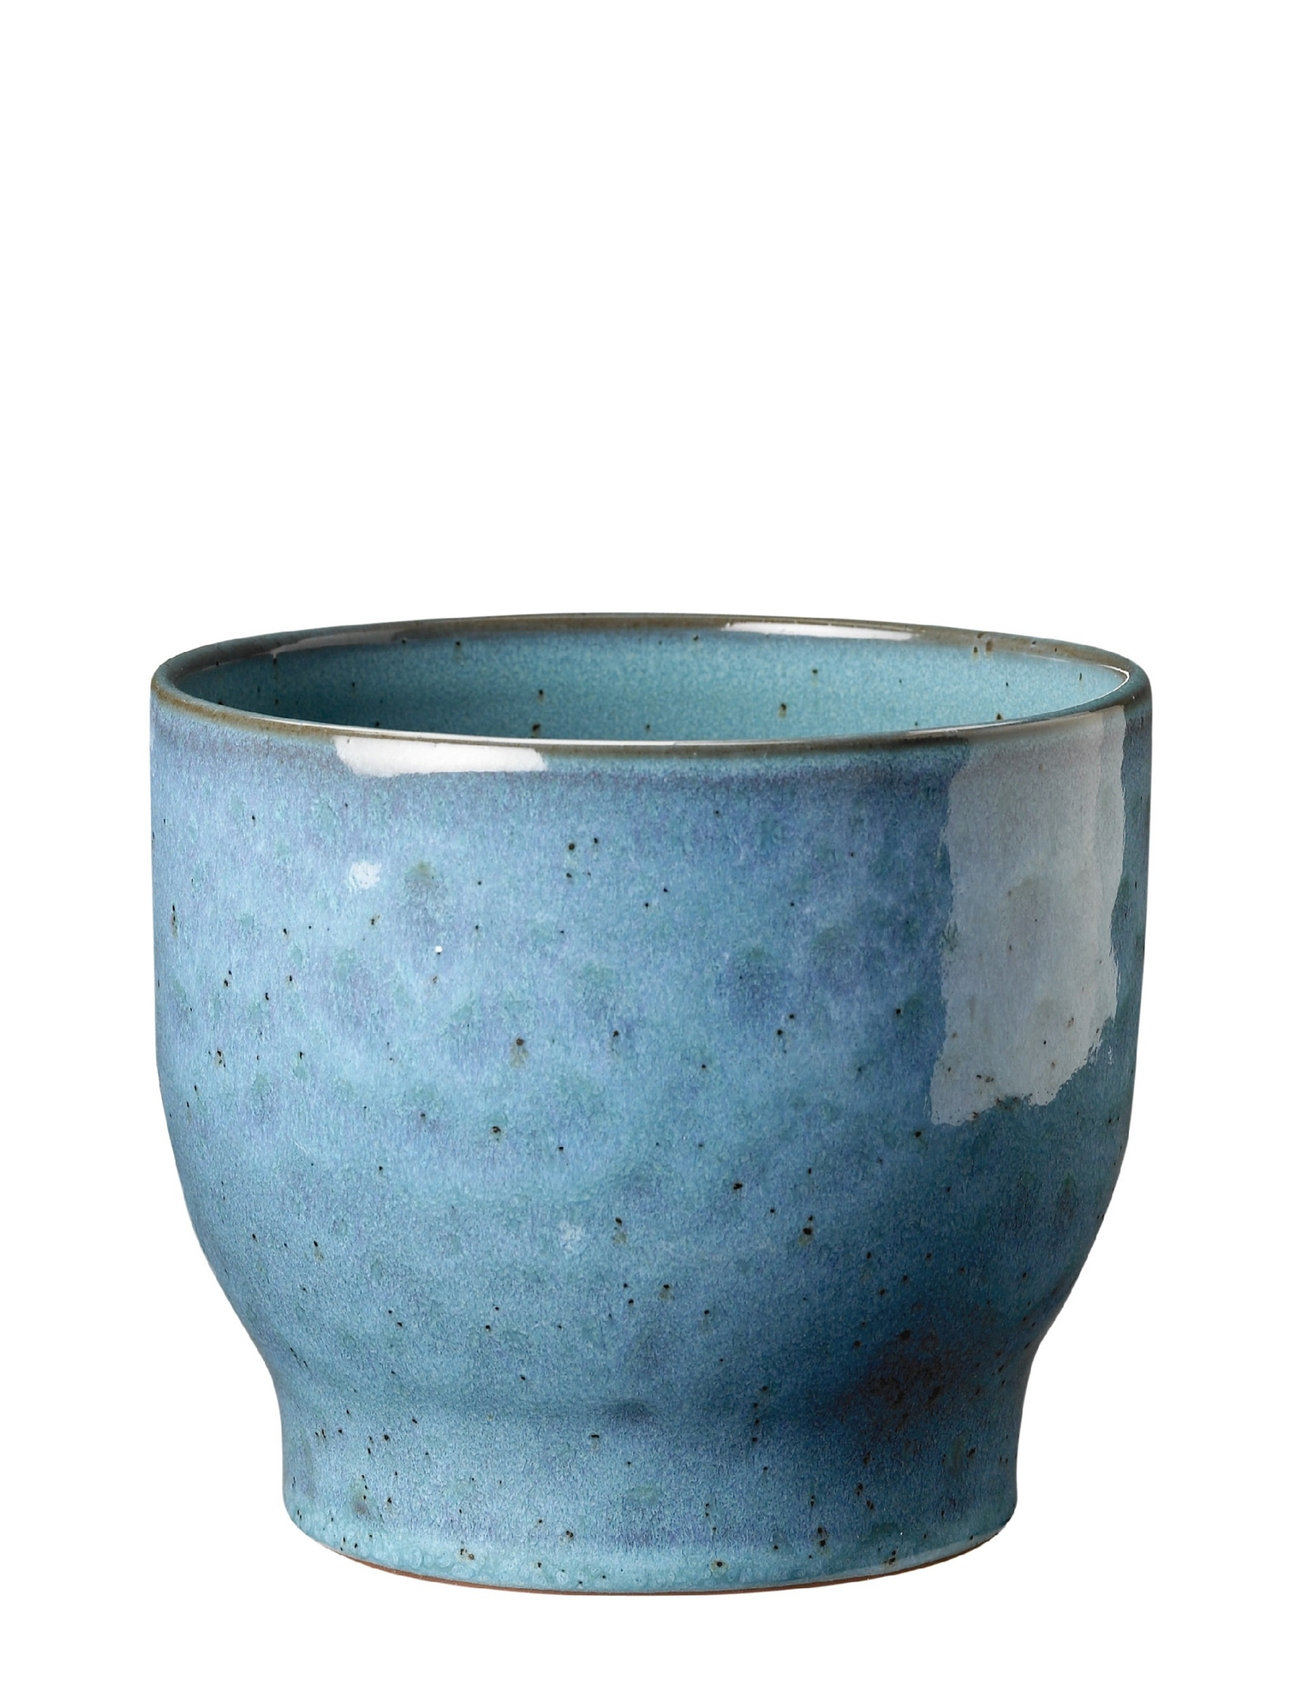 Urtepotteskjuler Home Decoration Flower Pots Blue Knabstrup Keramik